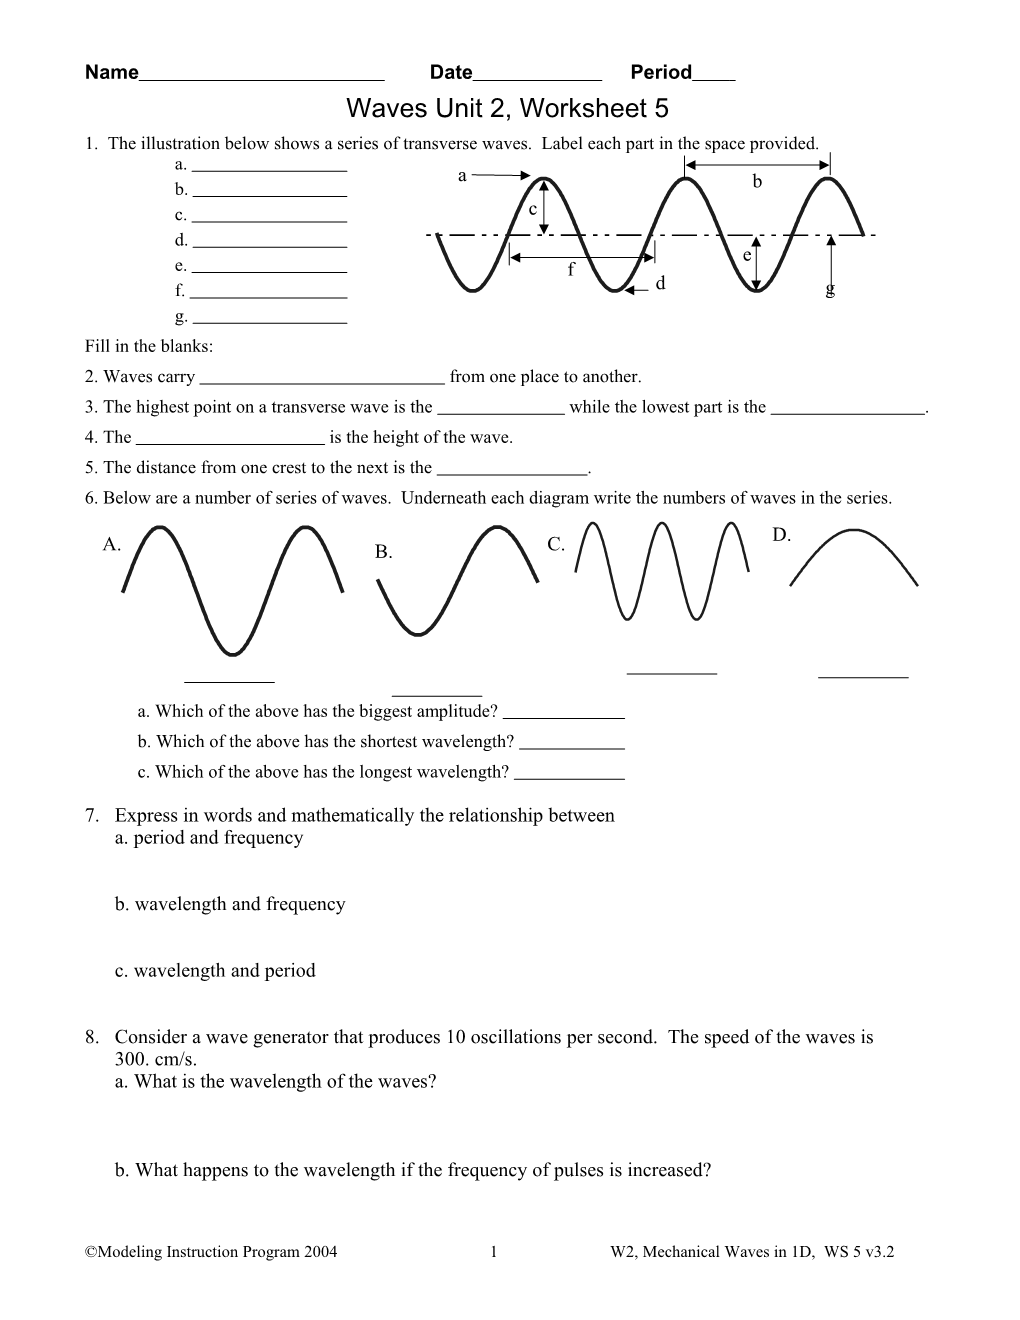 Waves Unit 2, Worksheet 5